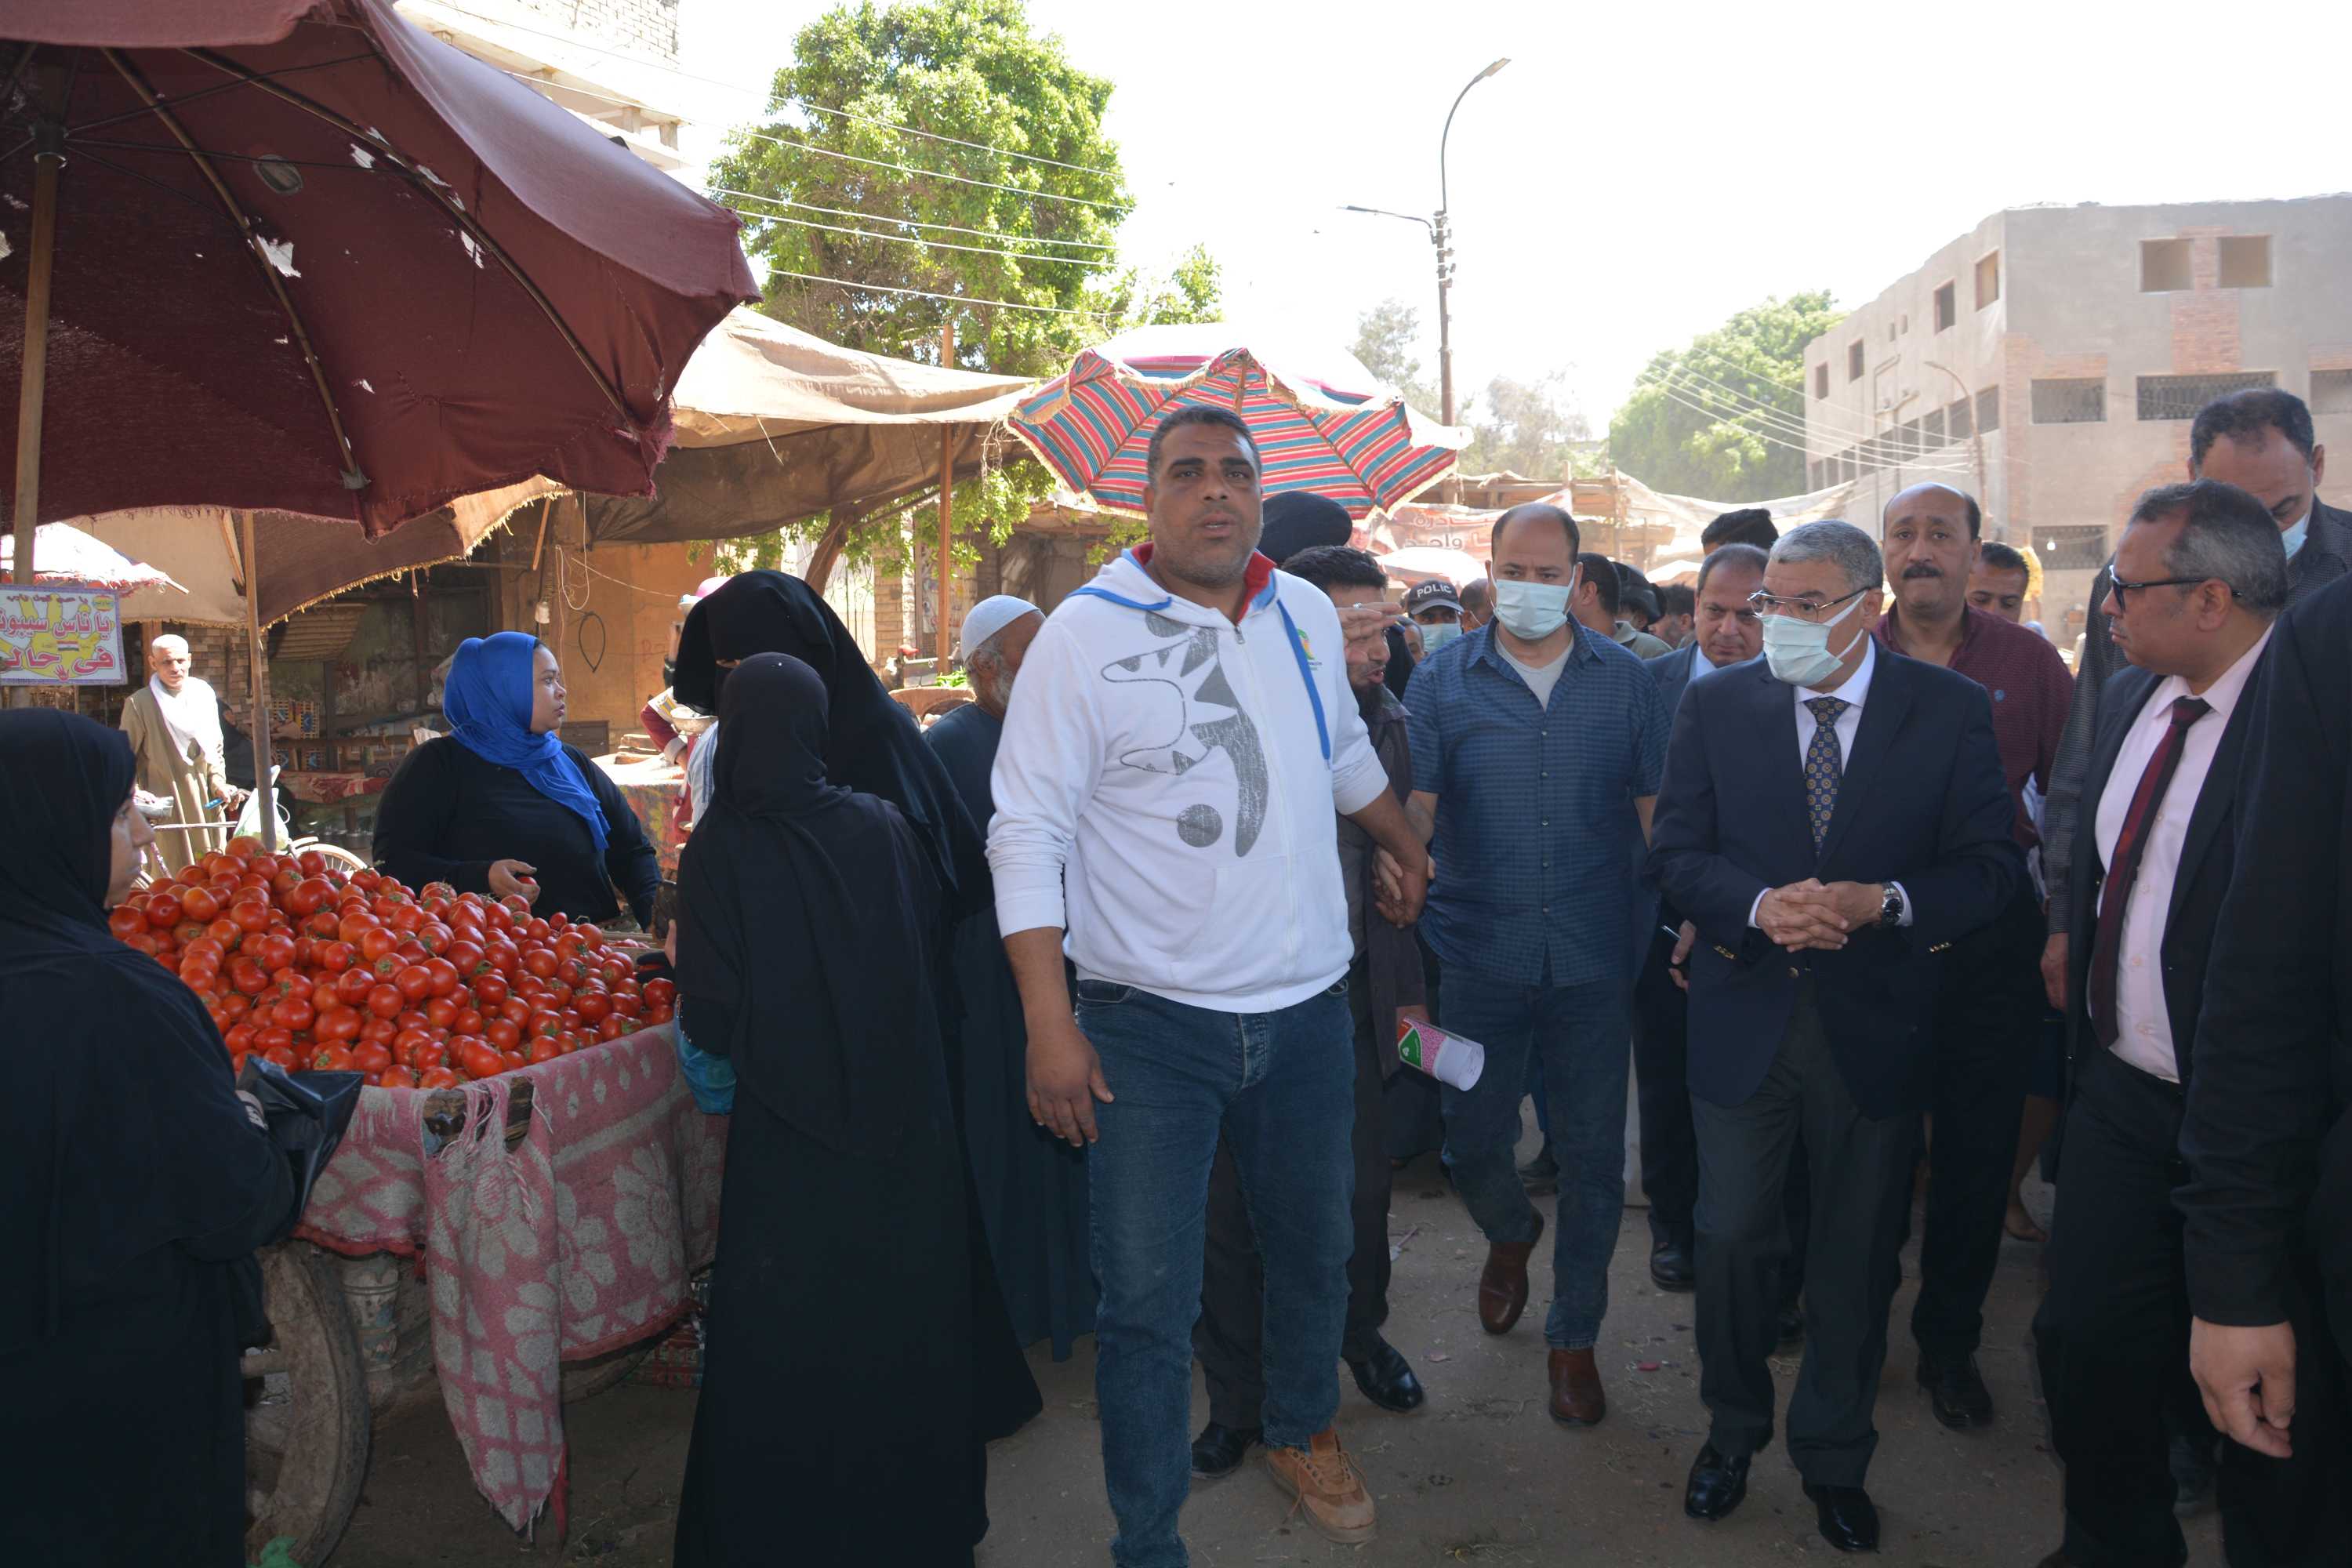 محافظ المنيا يتفقد معرض أهلا رمضان وموقع سوق الحبشي لتجهيز شوادر لبيع الخضر والفواكه بأسعار مخفضة  (3)